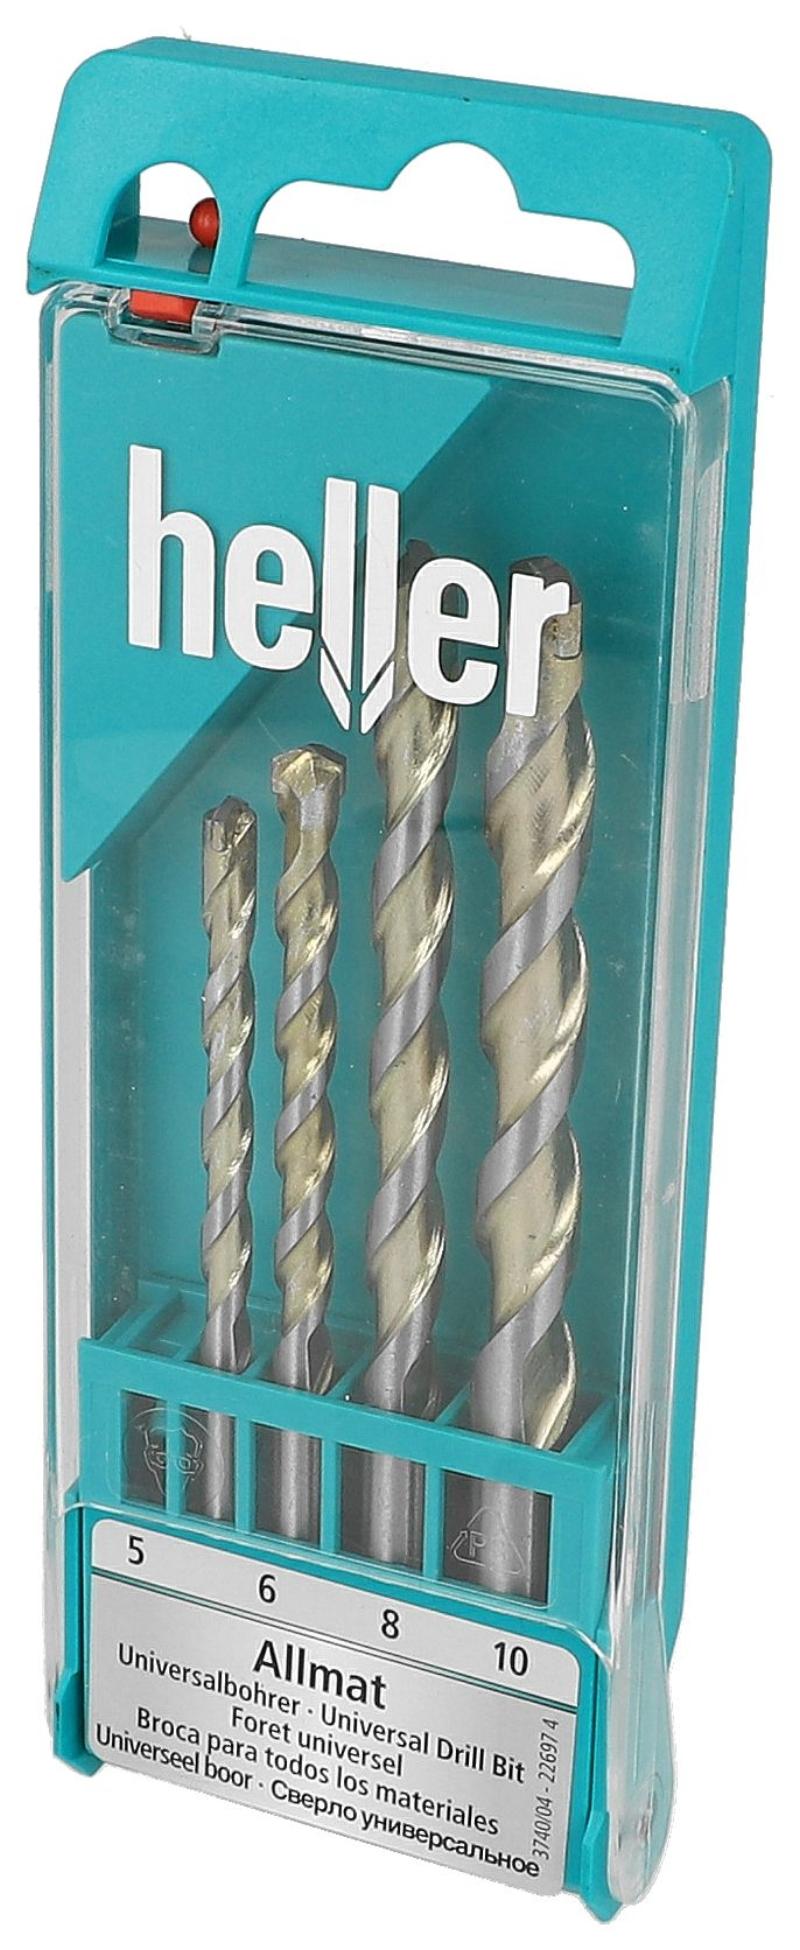 Heller Unibor Akku-Set, 4 Stück, 5,6,8,10 mm